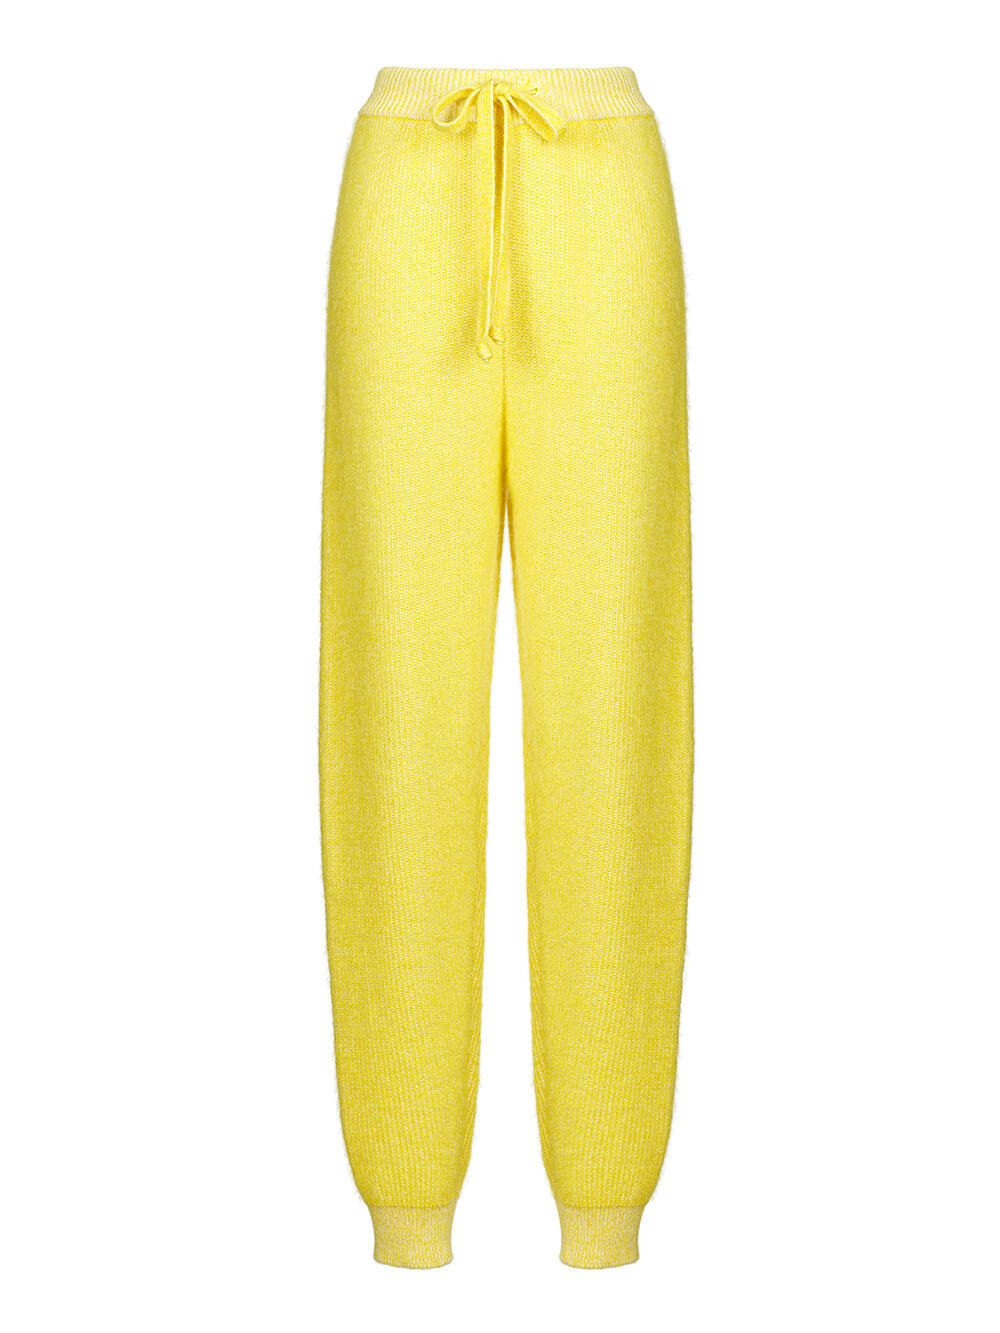 Женские брюки желтого цвета из мохера и кашемира